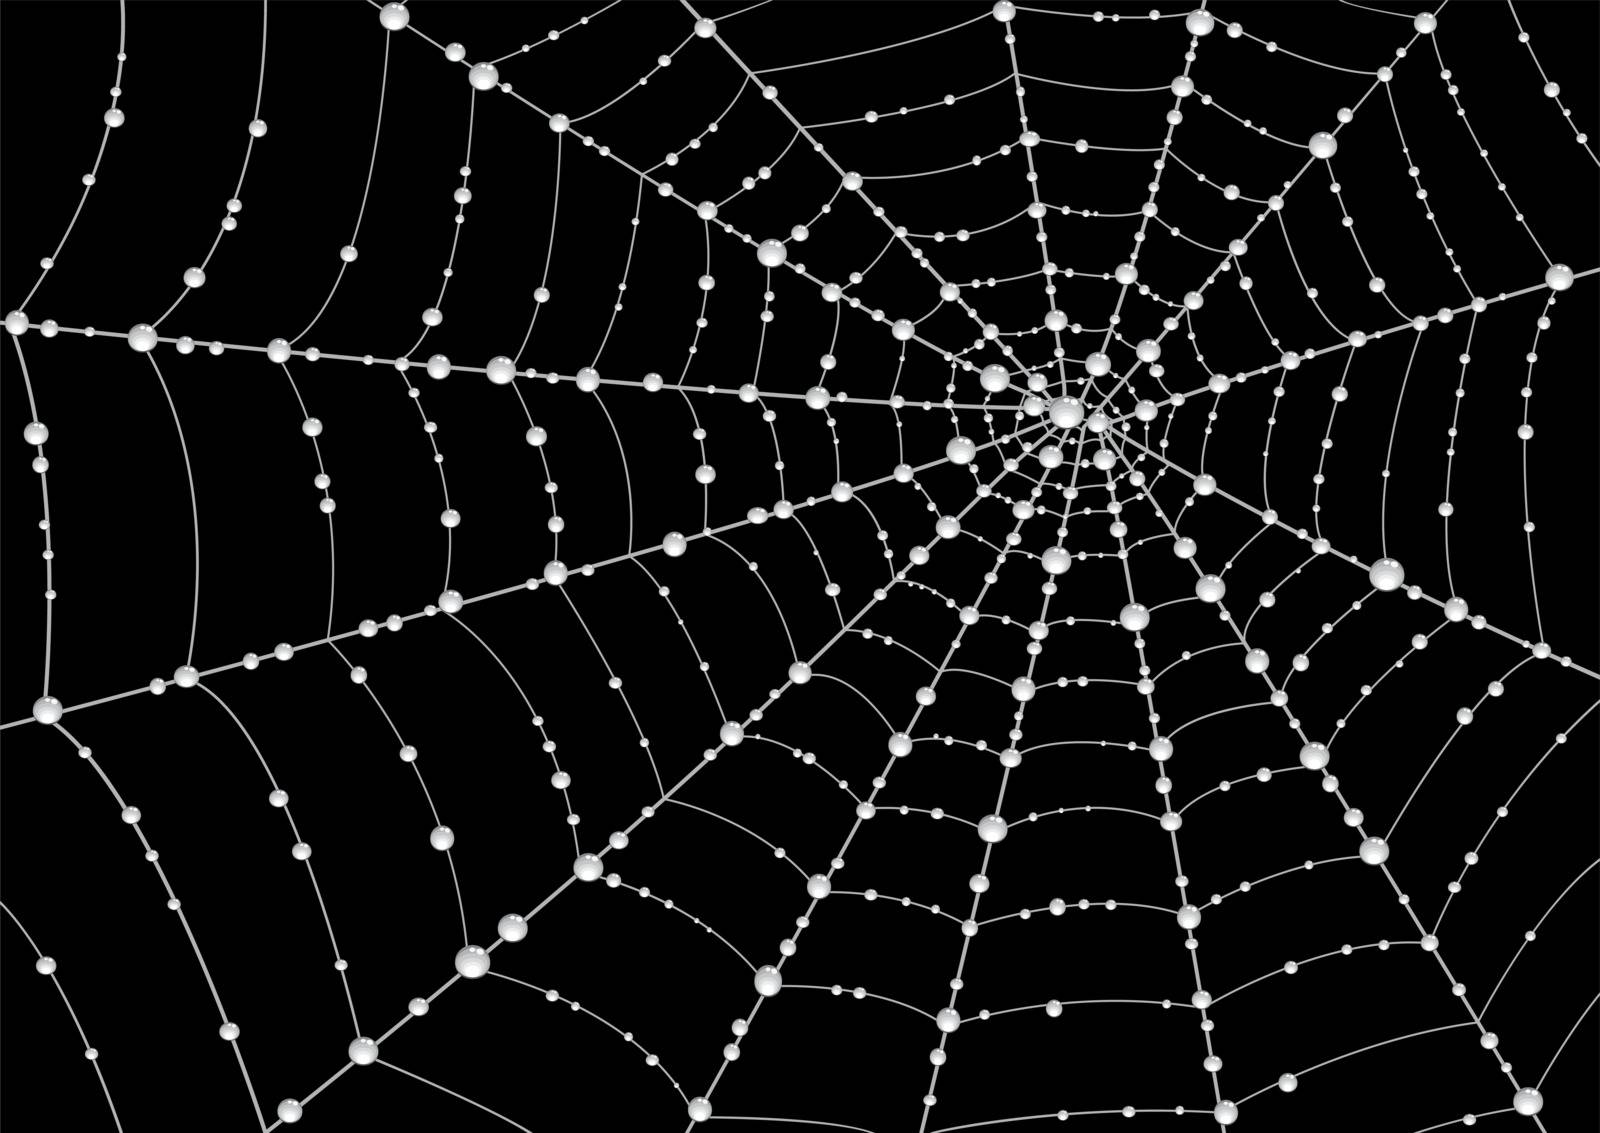 Web in drops of dew by Scio21